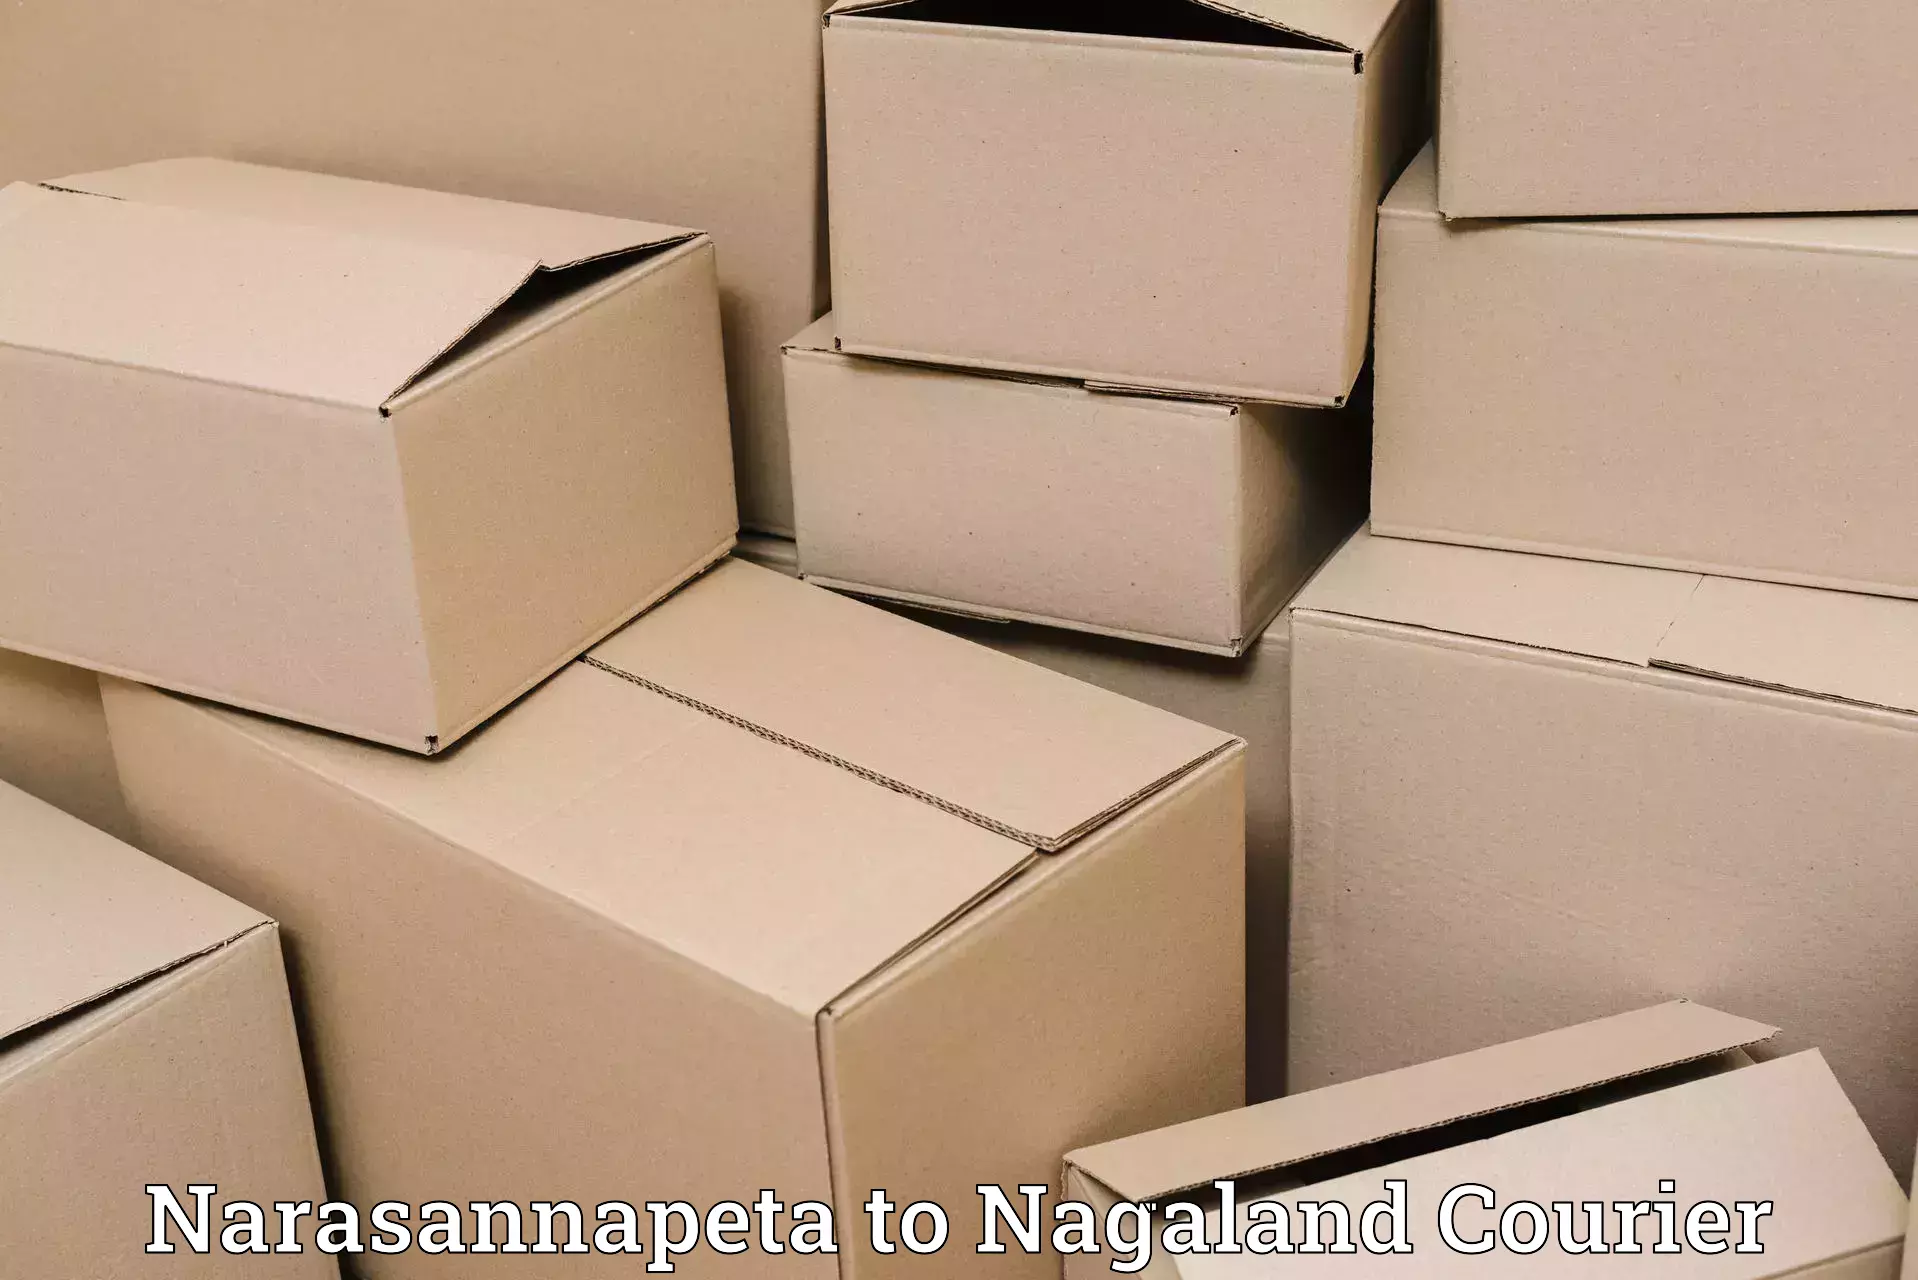 Advanced shipping network in Narasannapeta to Wokha